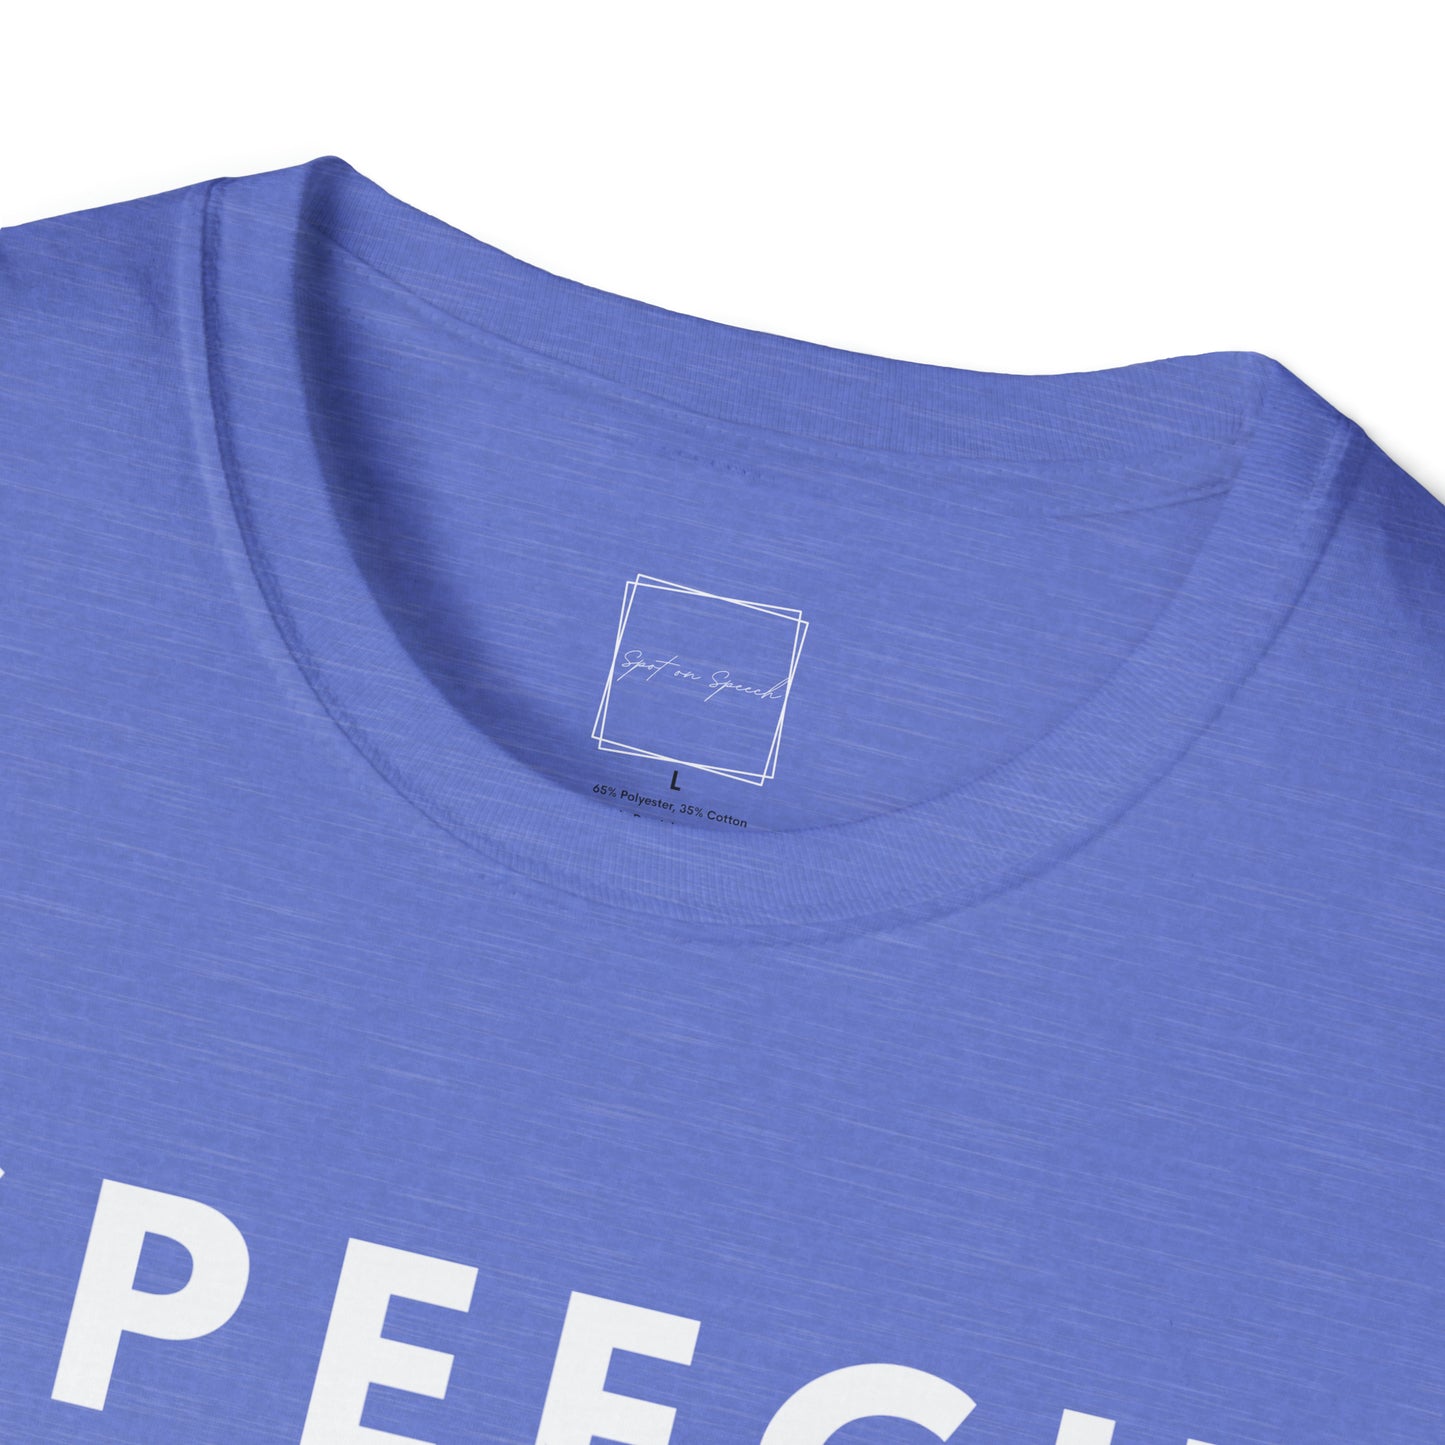 Speech Language Pathologist Unisex Softstyle T-Shirt